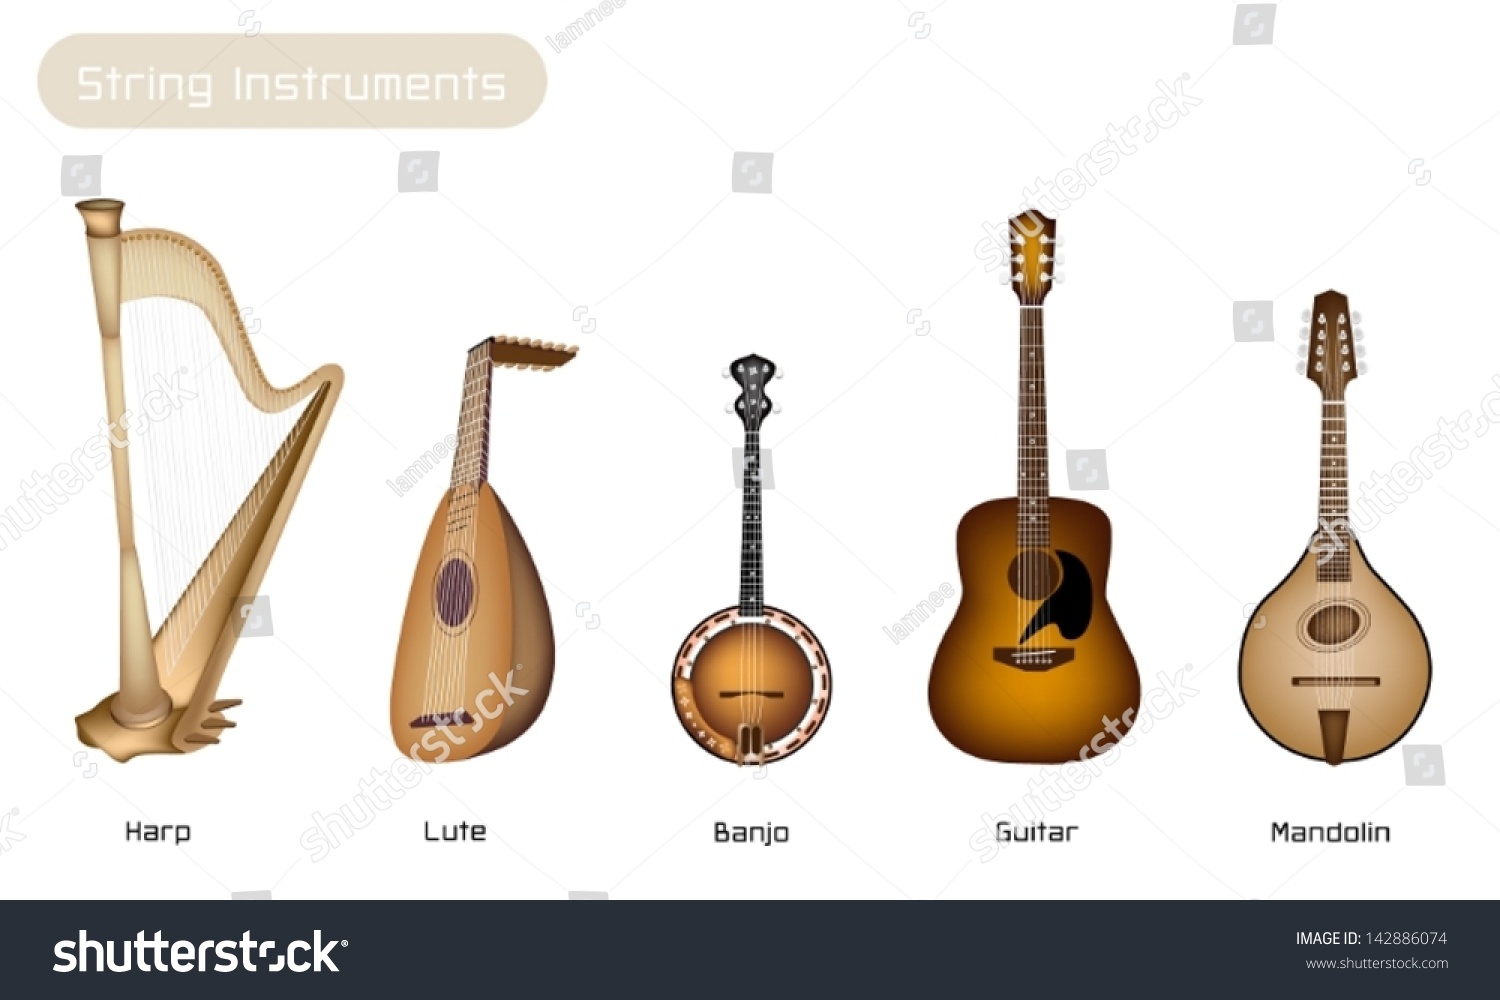 Музыкальный инструмент похожий на гитару. Мандолина струнные Щипковые музыкальные инструменты мандолина. Банджо струнные Щипковые музыкальные инструменты. Лютня струнные Щипковые музыкальные инструменты. Мандолина , лютня ,банджо.